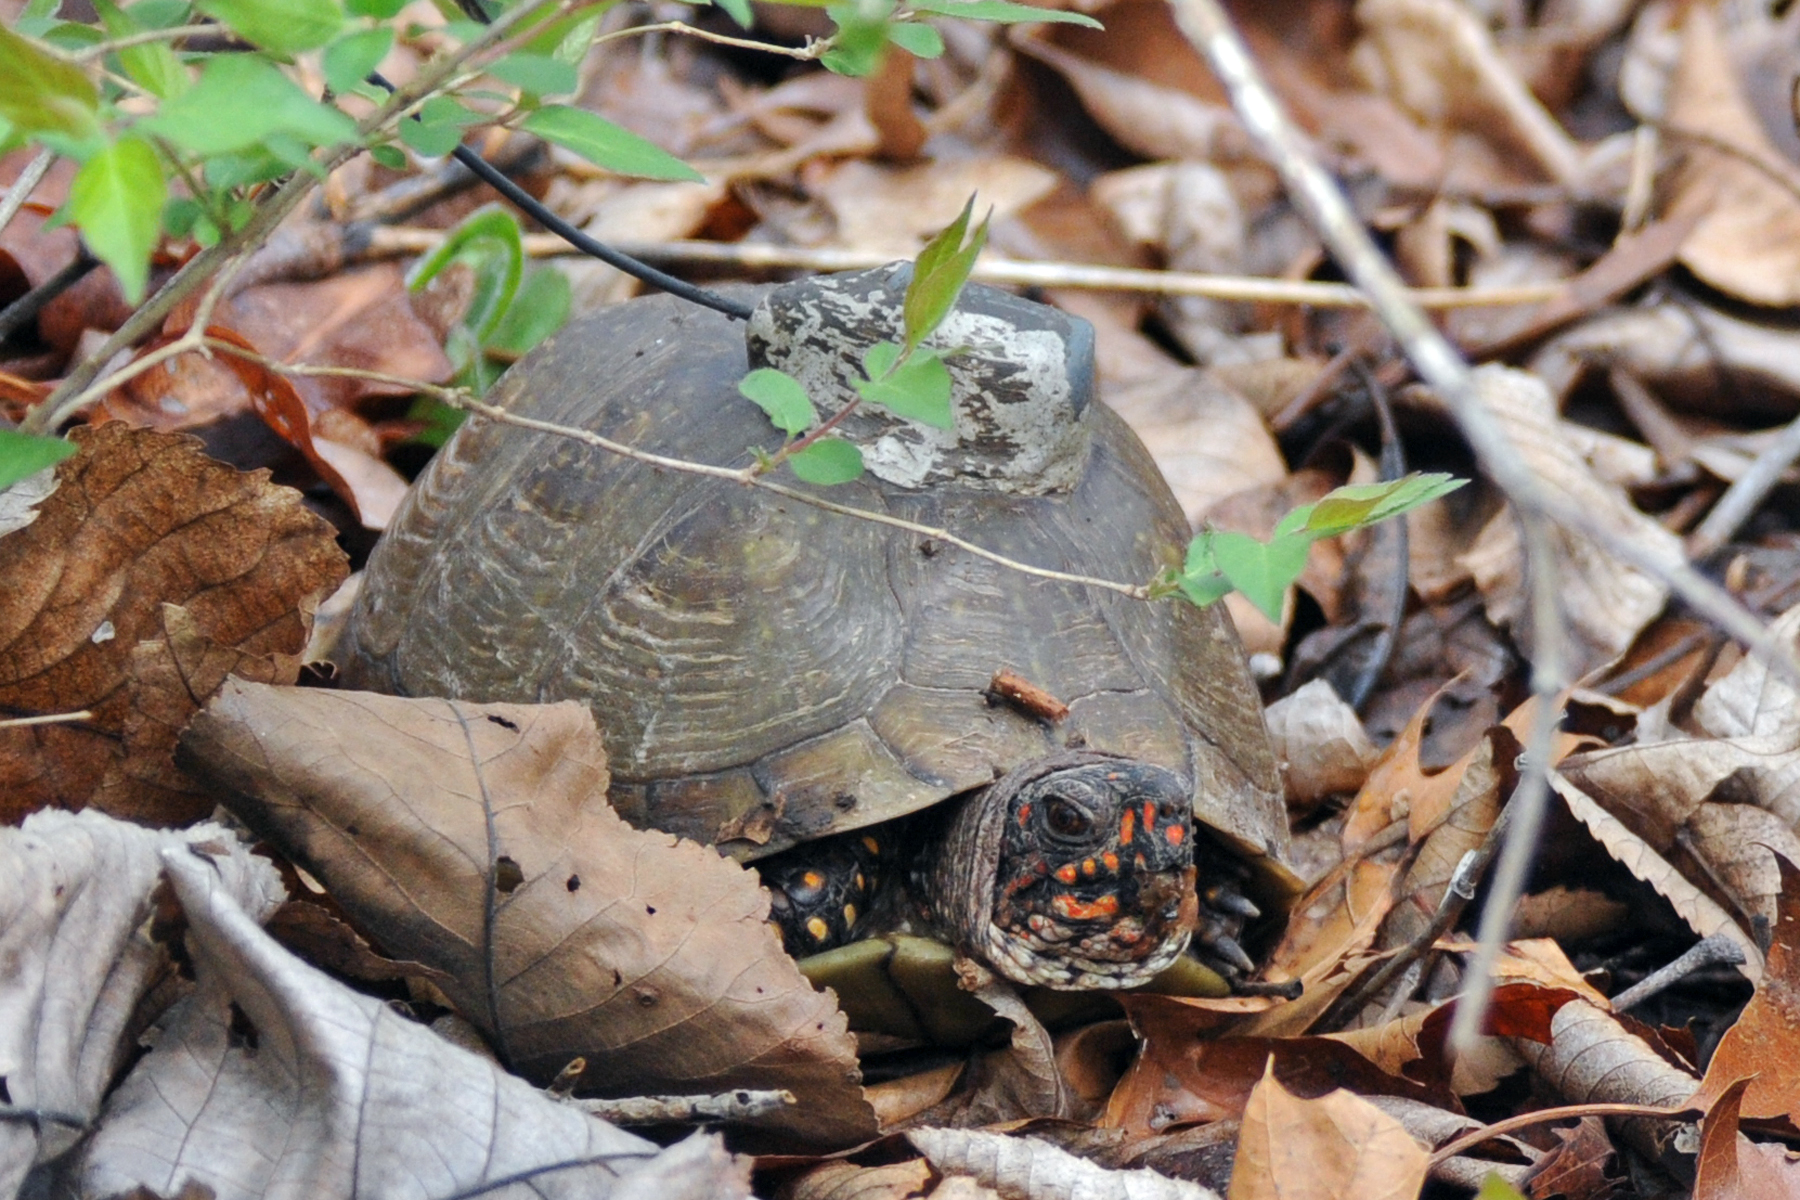 tagged turtle in leaves.jpg